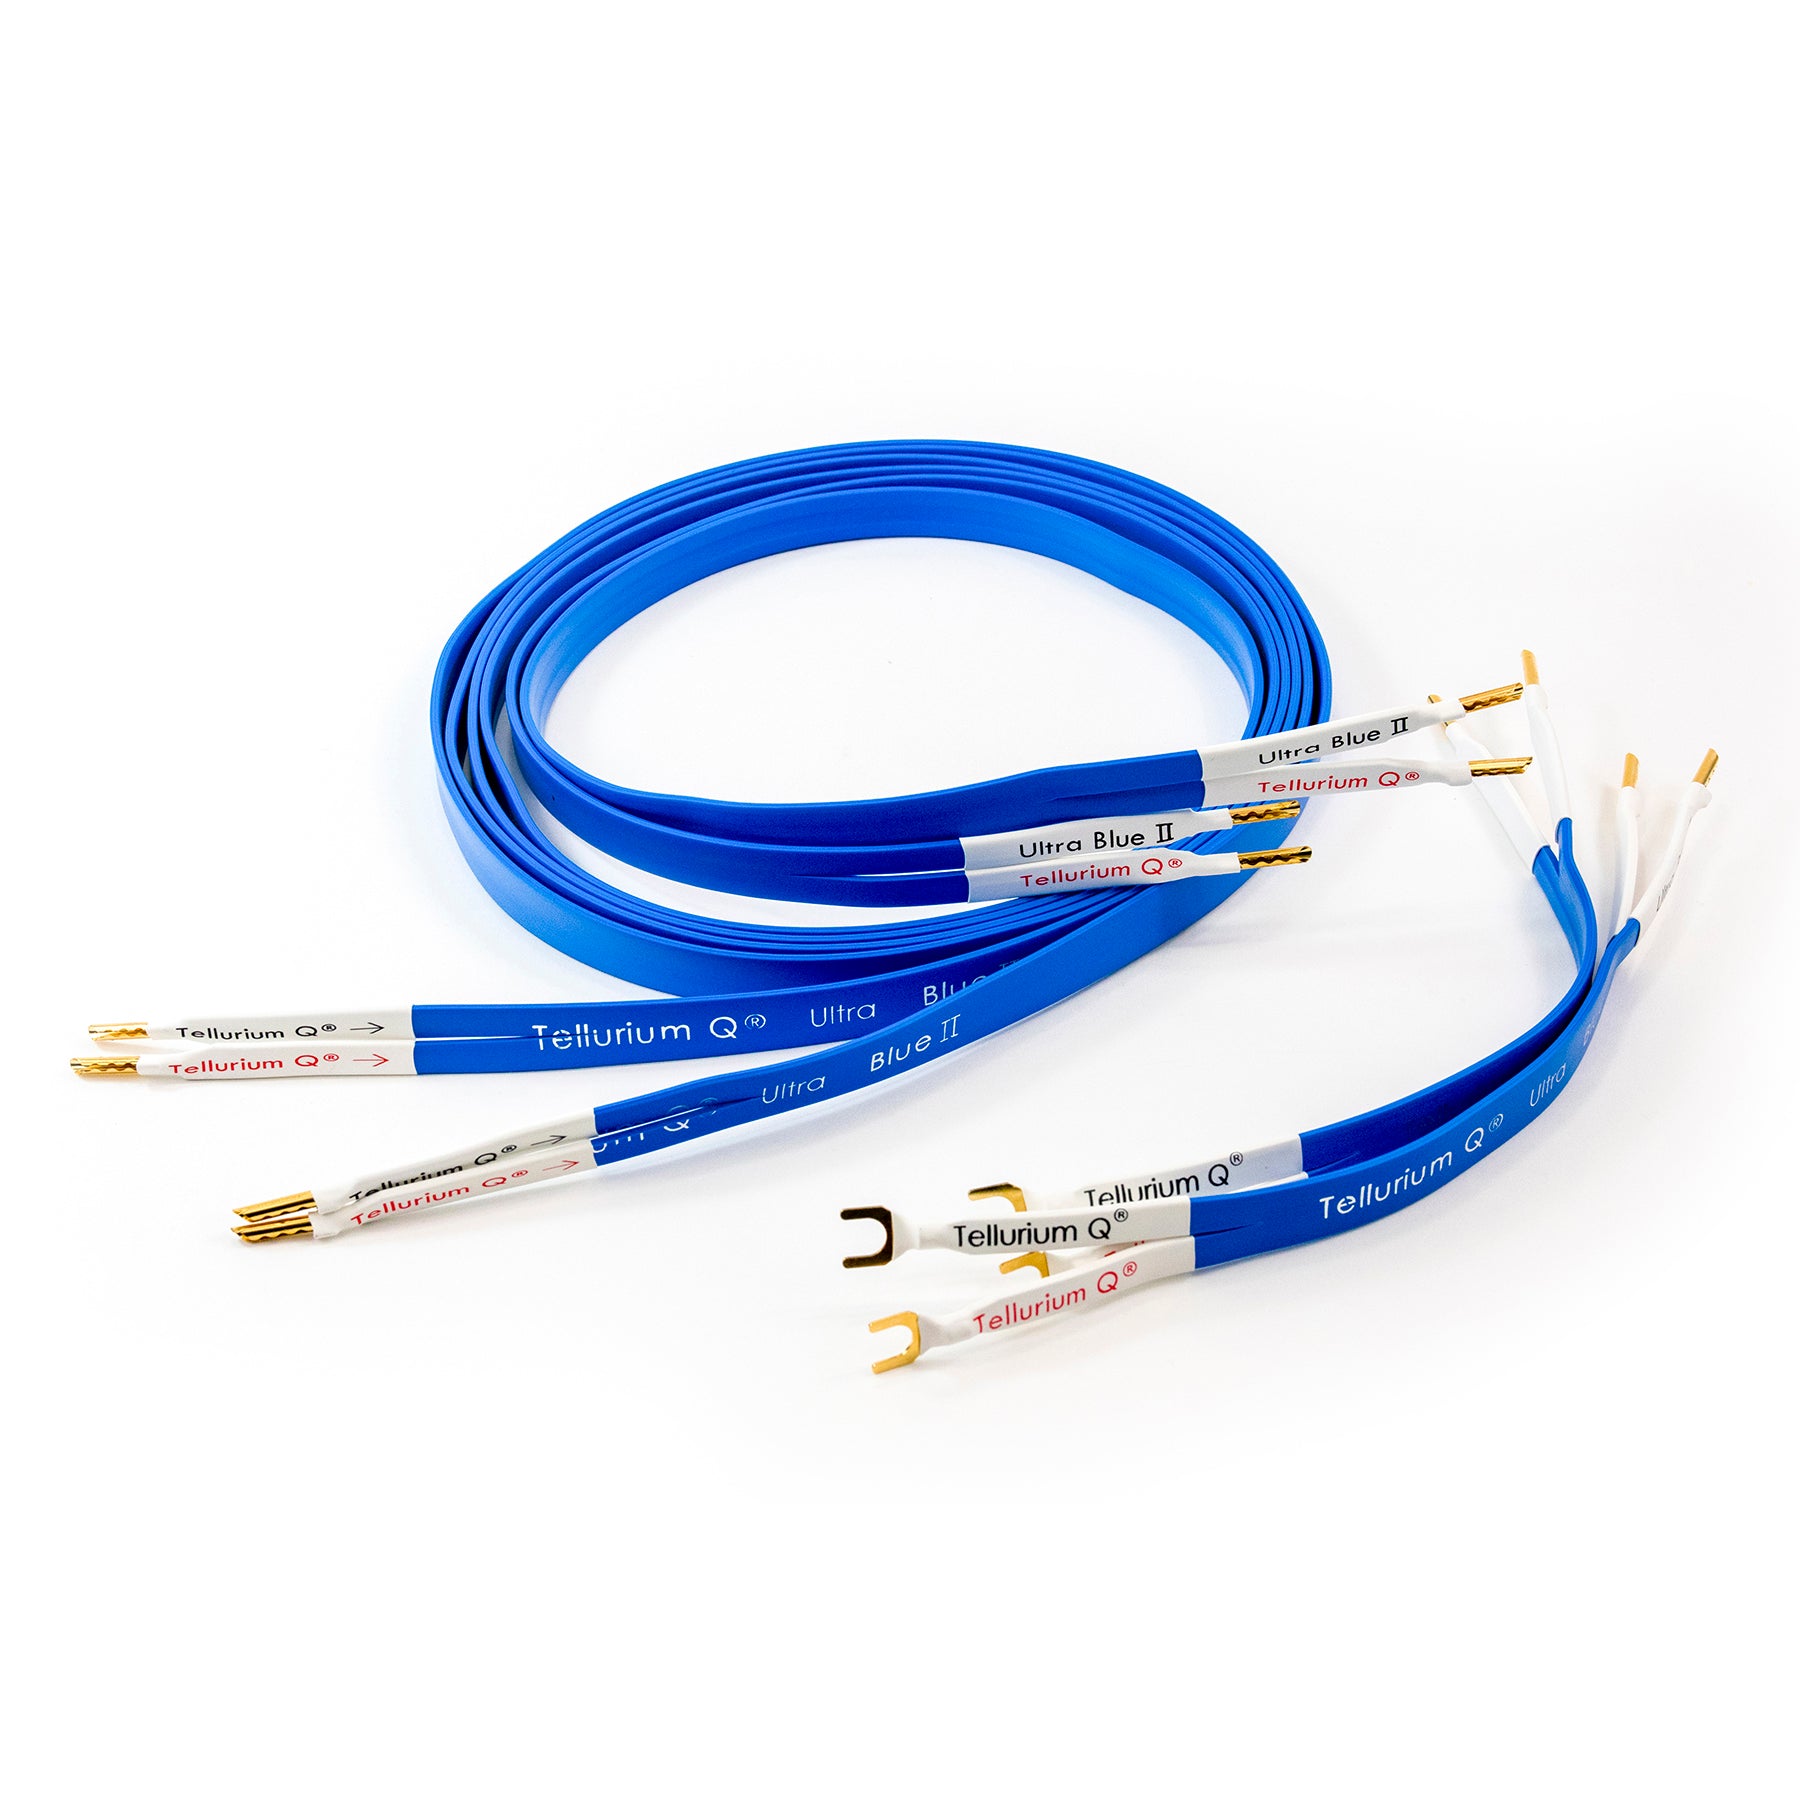 Tellurium Q Ultra Blue II Speaker Cable (pair)